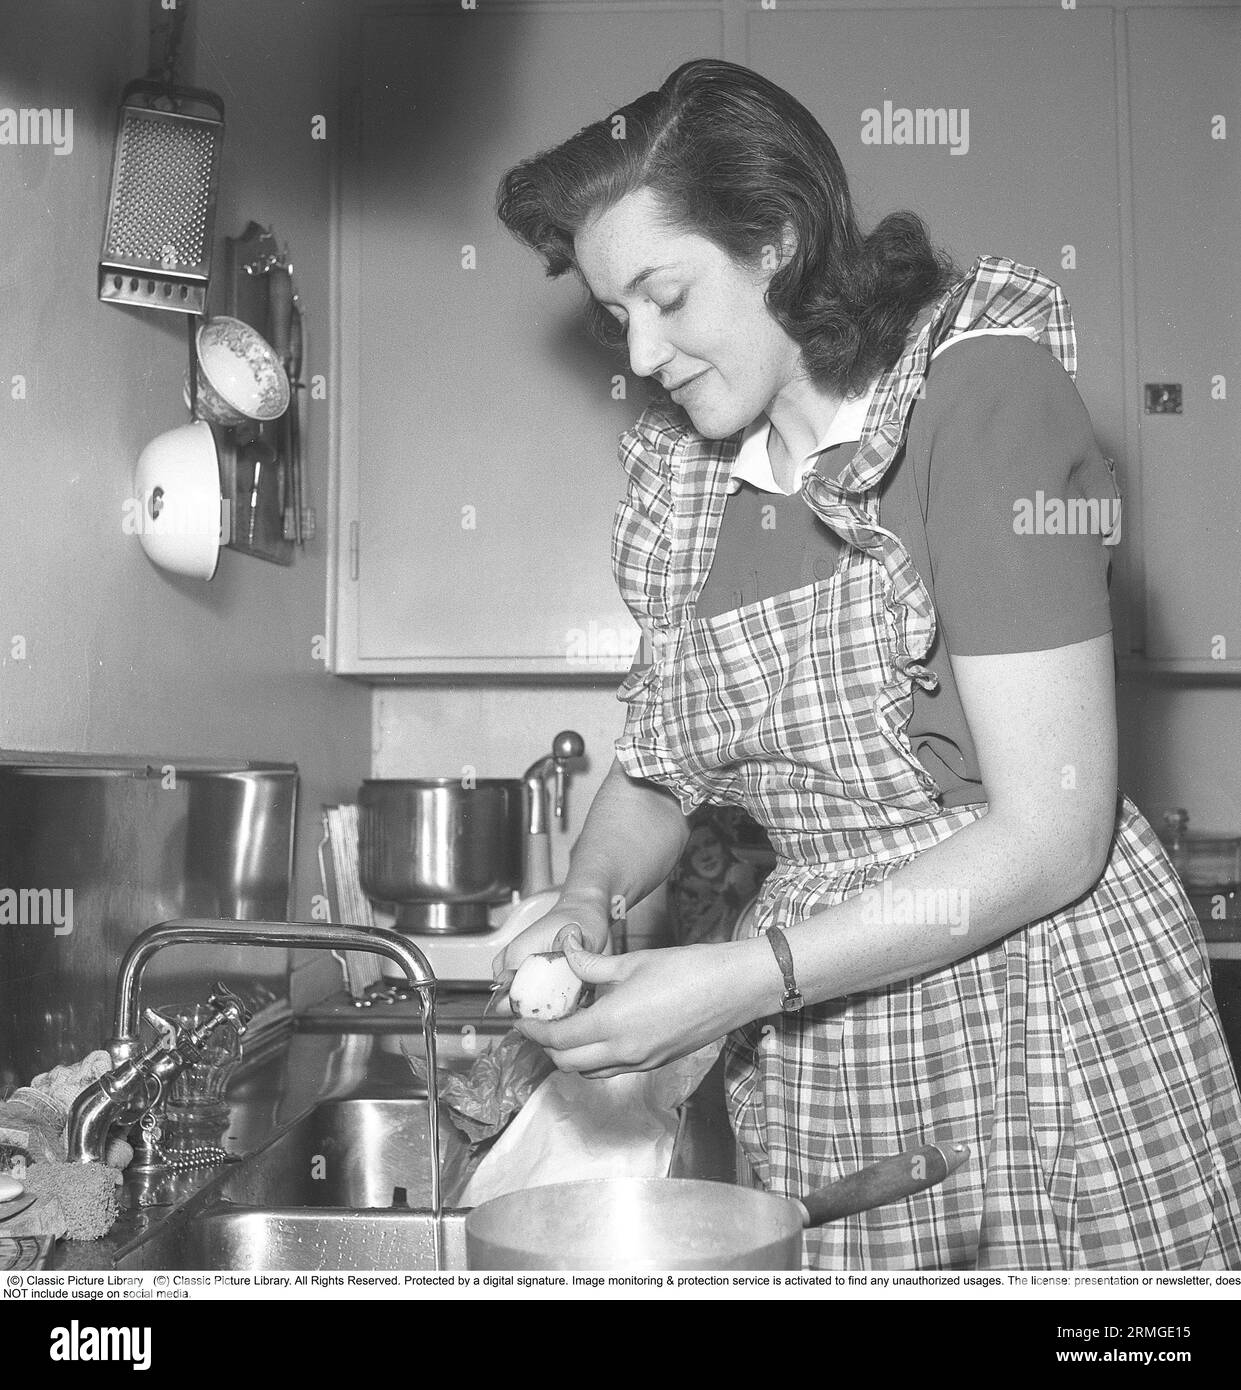 Dans les années 1940 Une femme dans une cuisine typique des années 1940 avec les détails de l'intérieur et les objets étant très représentatifs de la décennie. Un assistant ménager, machine de cuisine, est un appareil électrique dont la fonction de base est de mélanger et traiter la pâte et il est vu debout sur le banc. En fait, l'assistant ménager est un mot de marque tiré du modèle Electrolux appelé Assistant. Electrolux a déposé le mot Assistant en tant que marque commerciale. Contrairement, par exemple, aux robots de cuisine et aux fouets électriques, le traitement dans un assistant a lieu à une vitesse nettement inférieure, qui est une prer Banque D'Images